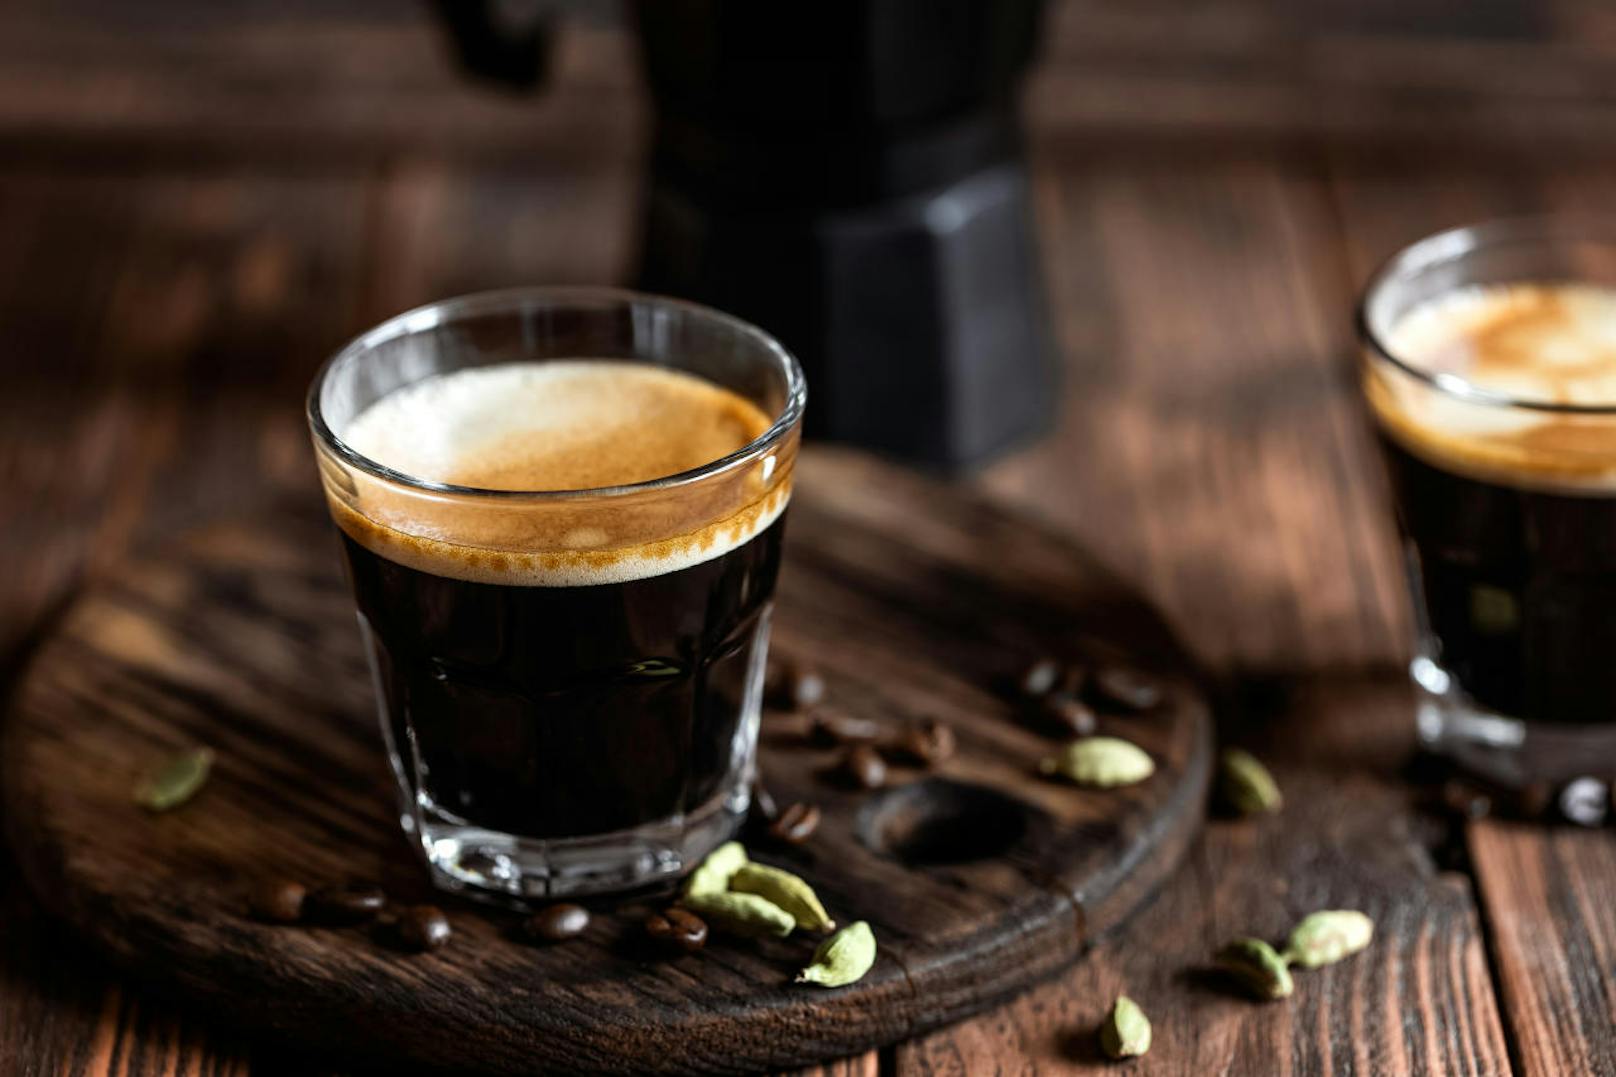 Demnach haben alle, die einen solch moderaten Kaffeekonsum haben, nicht nur ein geringeres Risiko für Herzkrankheiten, sondern auch ein niedrigeres Sterberisiko als Menschen, die keinen Kaffee trinken.